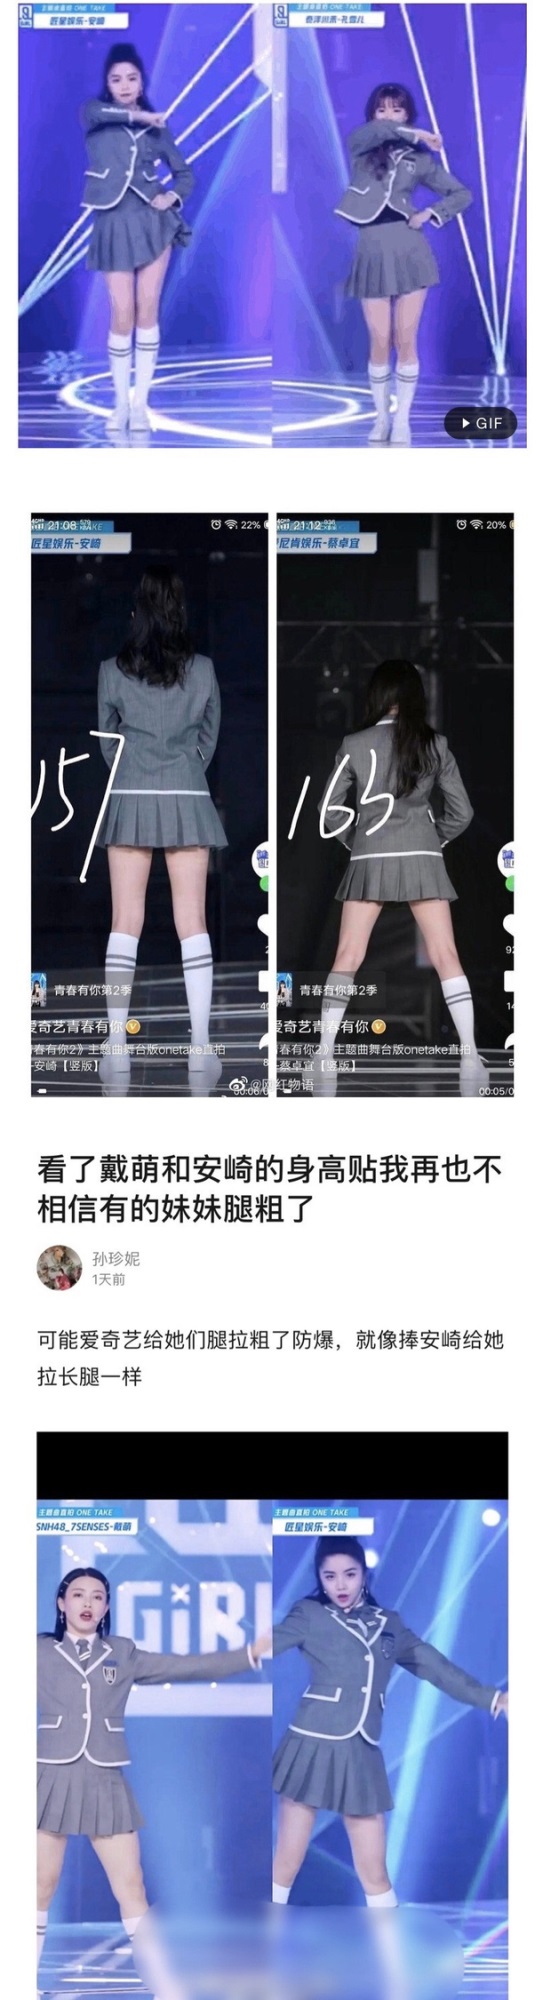 Tranh cãi nảy lửa trên Weibo: Một thành viên THE9 được 'biệt đãi' lộ liễu, debut nhưng 'danh không xứng với thực'? - Ảnh 4